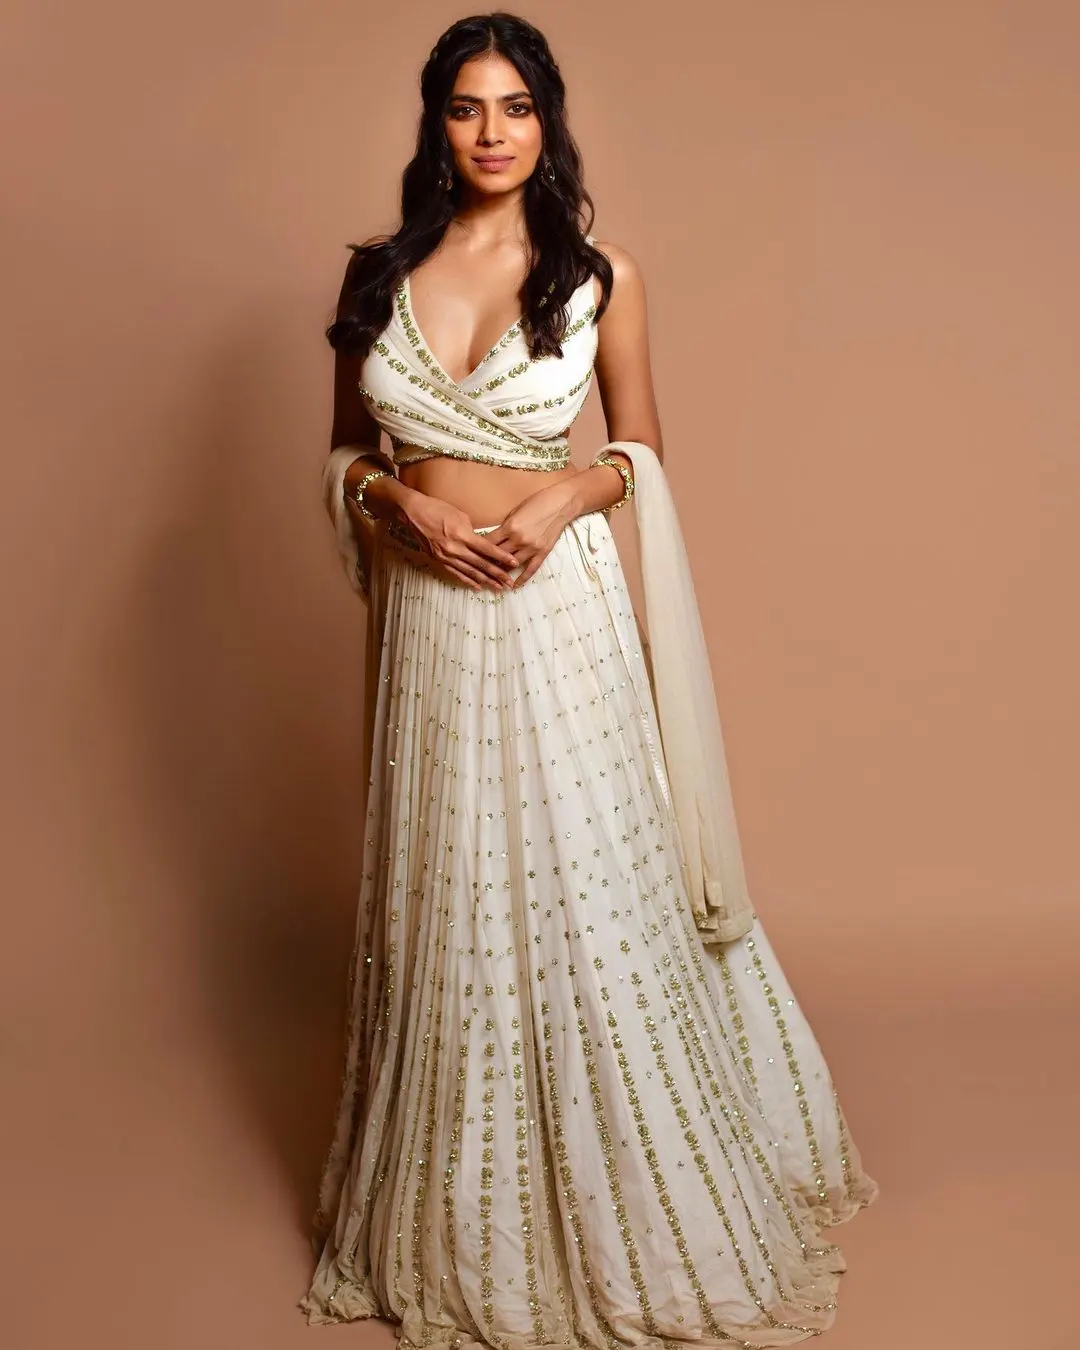 Malvika Mohanan Gorgeous Photos in White Dress